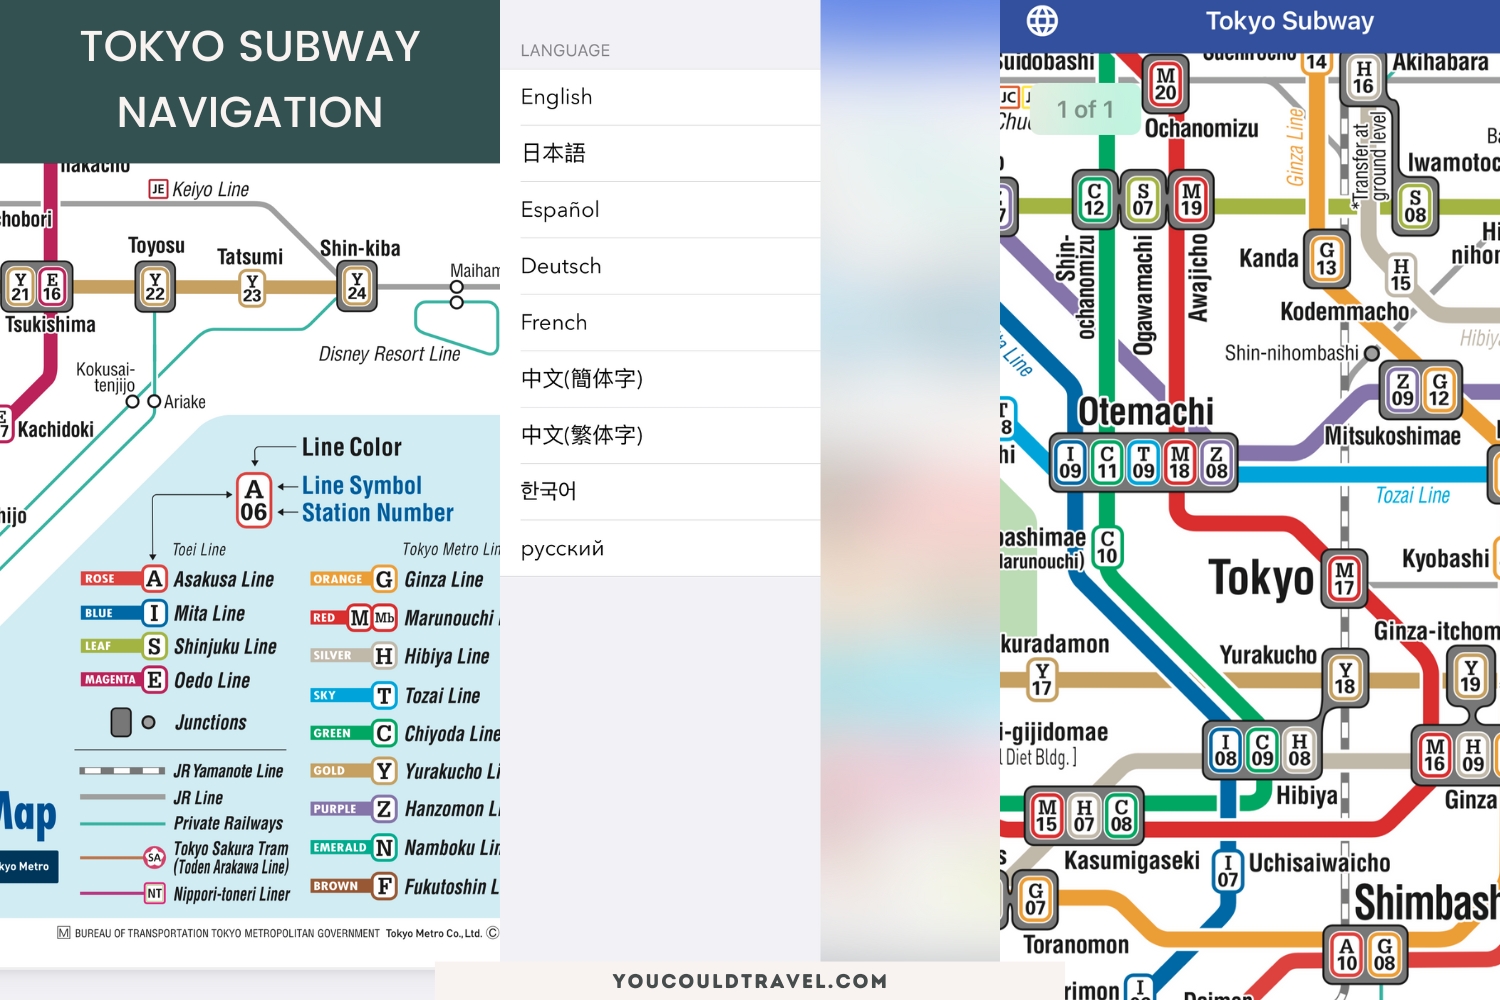 iOS screenshots of Tokyo subway navigation app